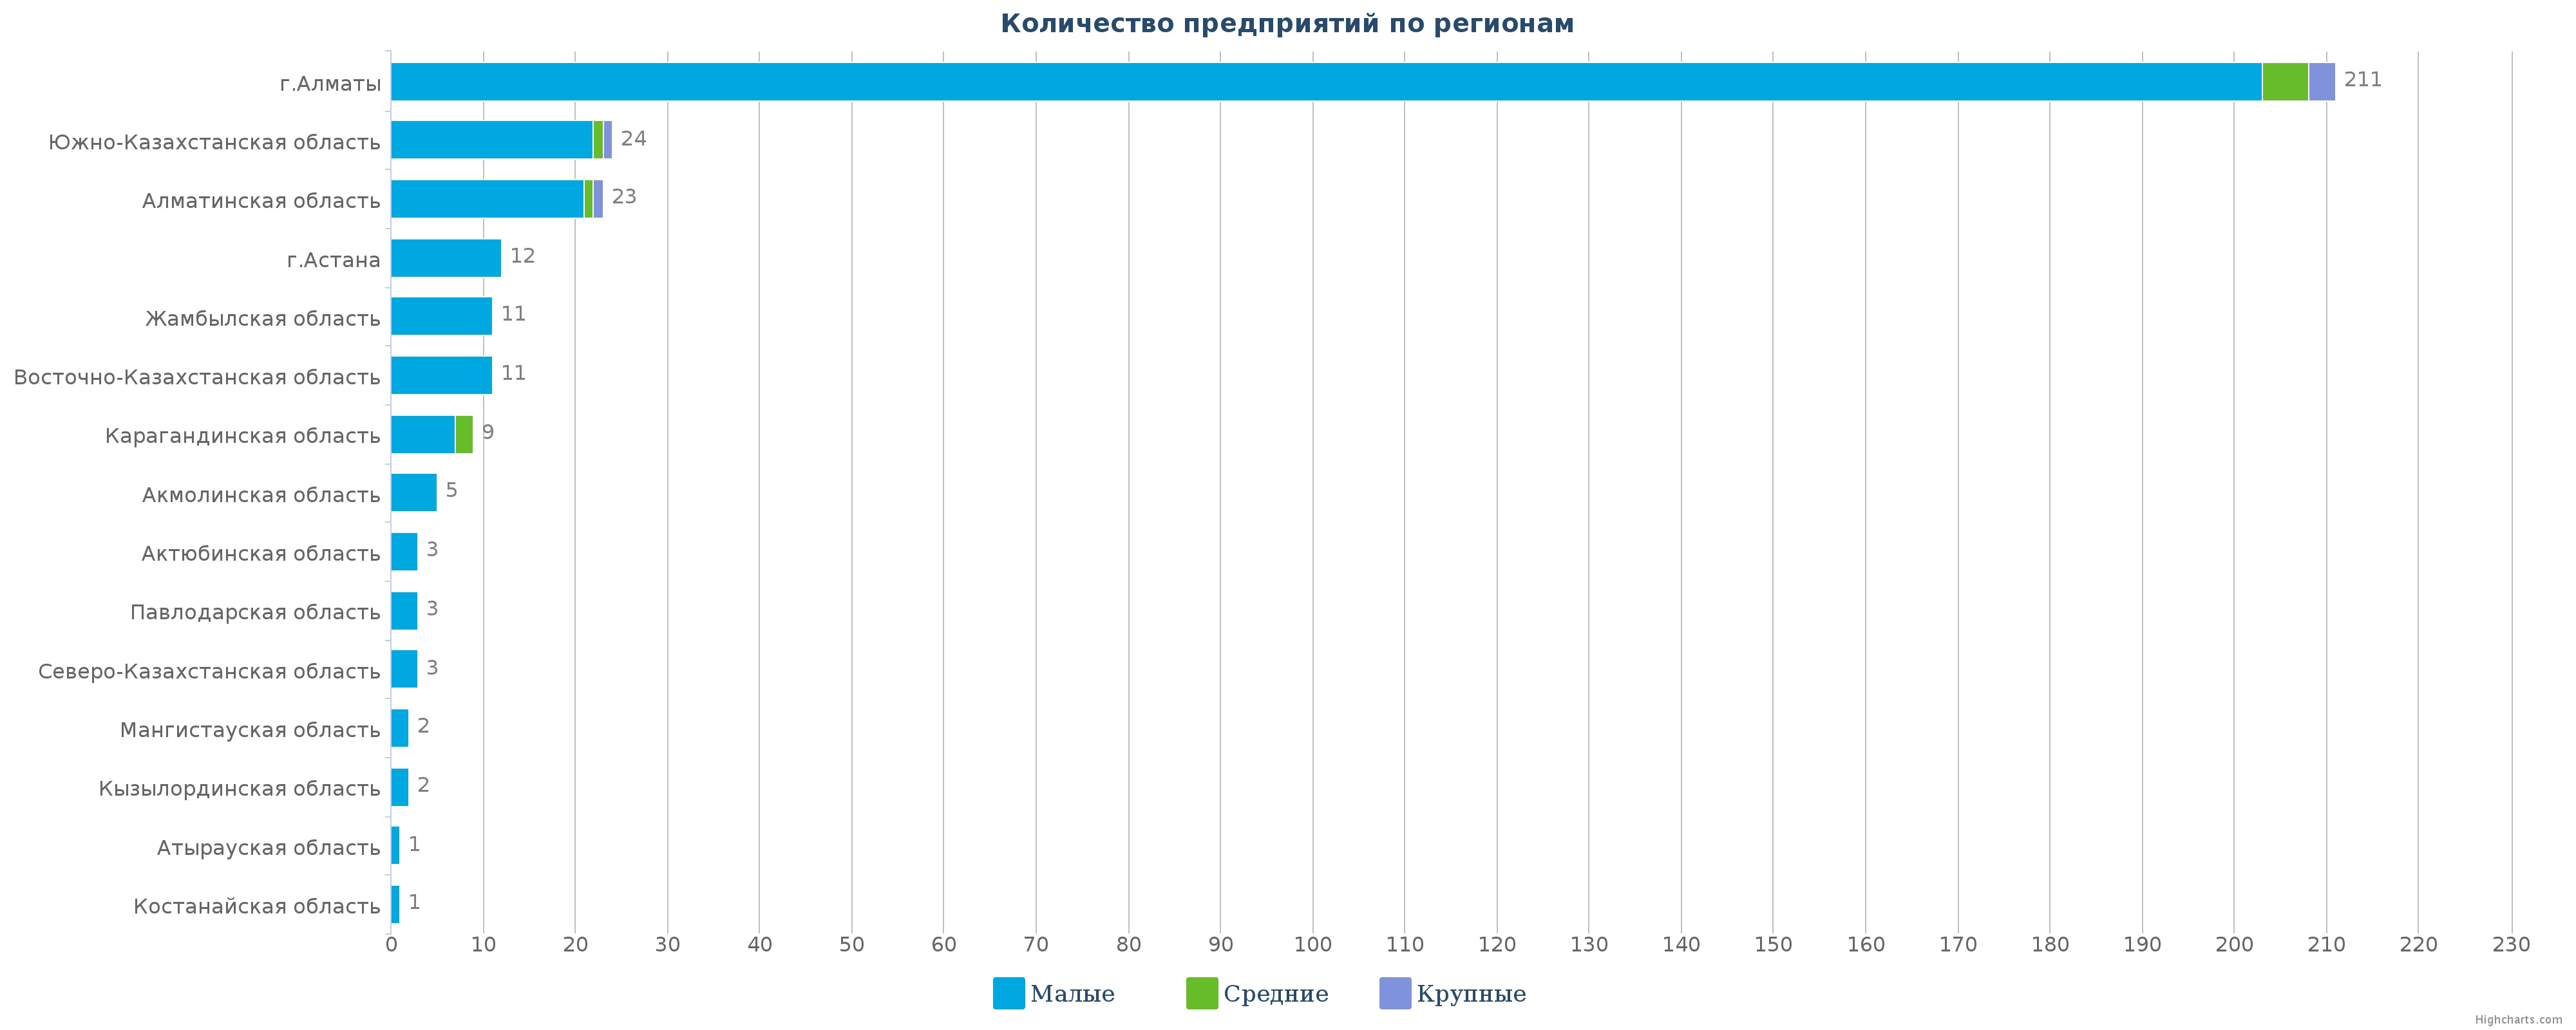 Количество предприятий по производству основных фармацевтических  продуктов по регионам Казахстана